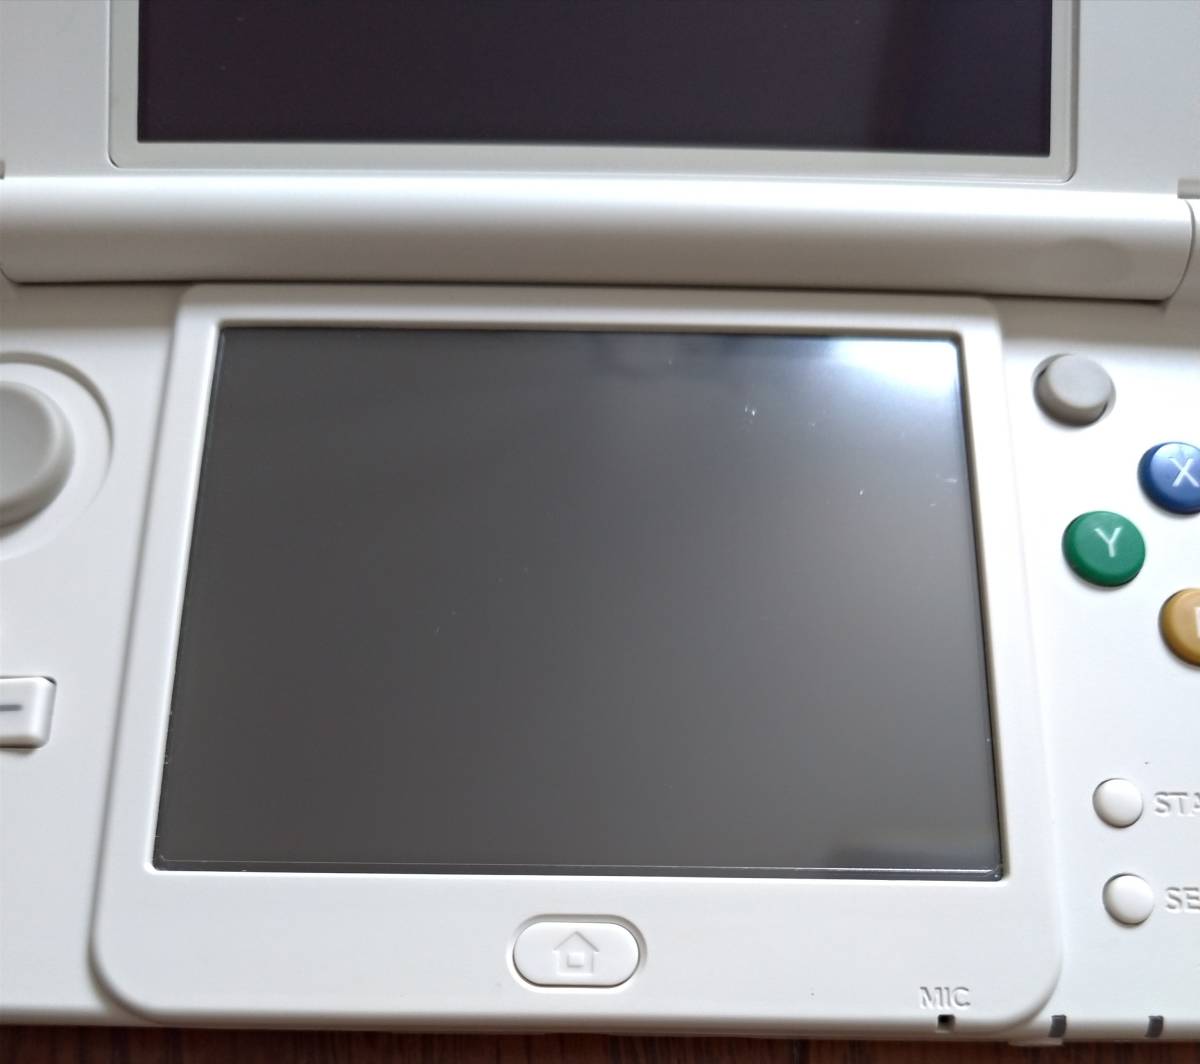 NEWニンテンドー3DS NEW NINTENDO 3DS ホワイト 中古美品 全体綺麗 上下画面傷なし 不具合なし 充電器 タッチペン SDカード4GB 送料無料